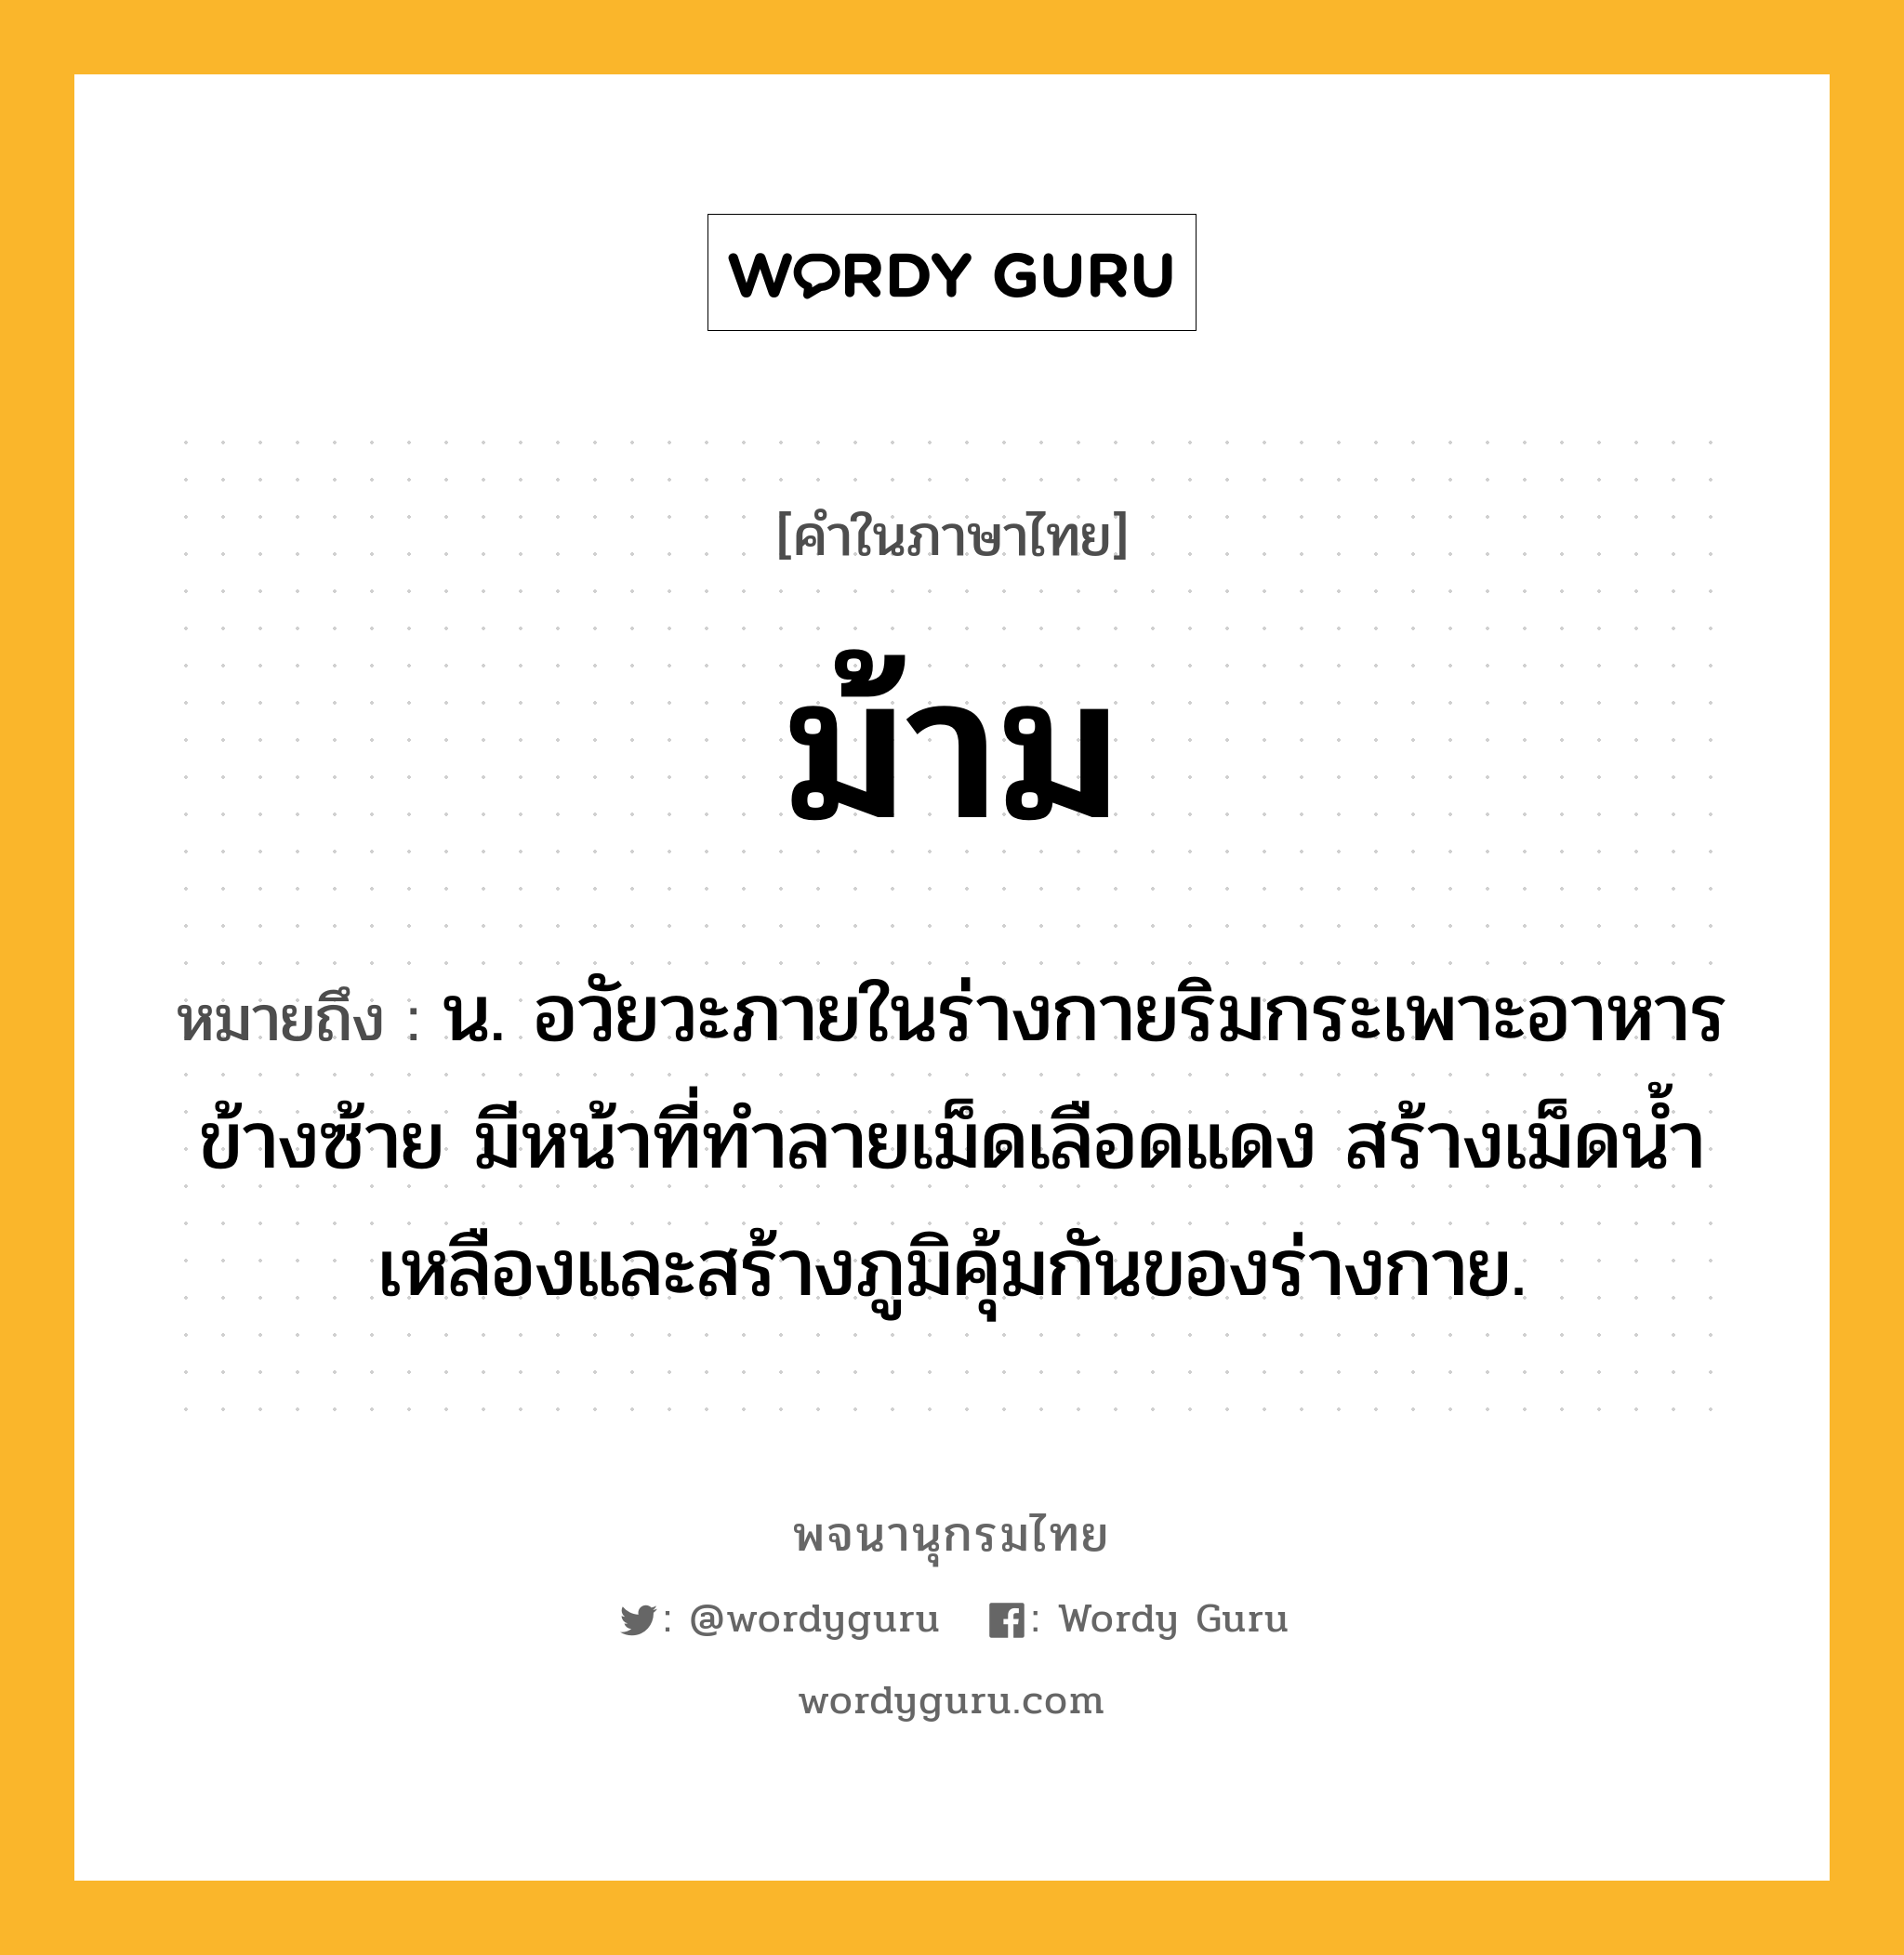 ม้าม ความหมาย หมายถึงอะไร?, คำในภาษาไทย ม้าม หมายถึง น. อวัยวะภายในร่างกายริมกระเพาะอาหารข้างซ้าย มีหน้าที่ทําลายเม็ดเลือดแดง สร้างเม็ดนํ้าเหลืองและสร้างภูมิคุ้มกันของร่างกาย.